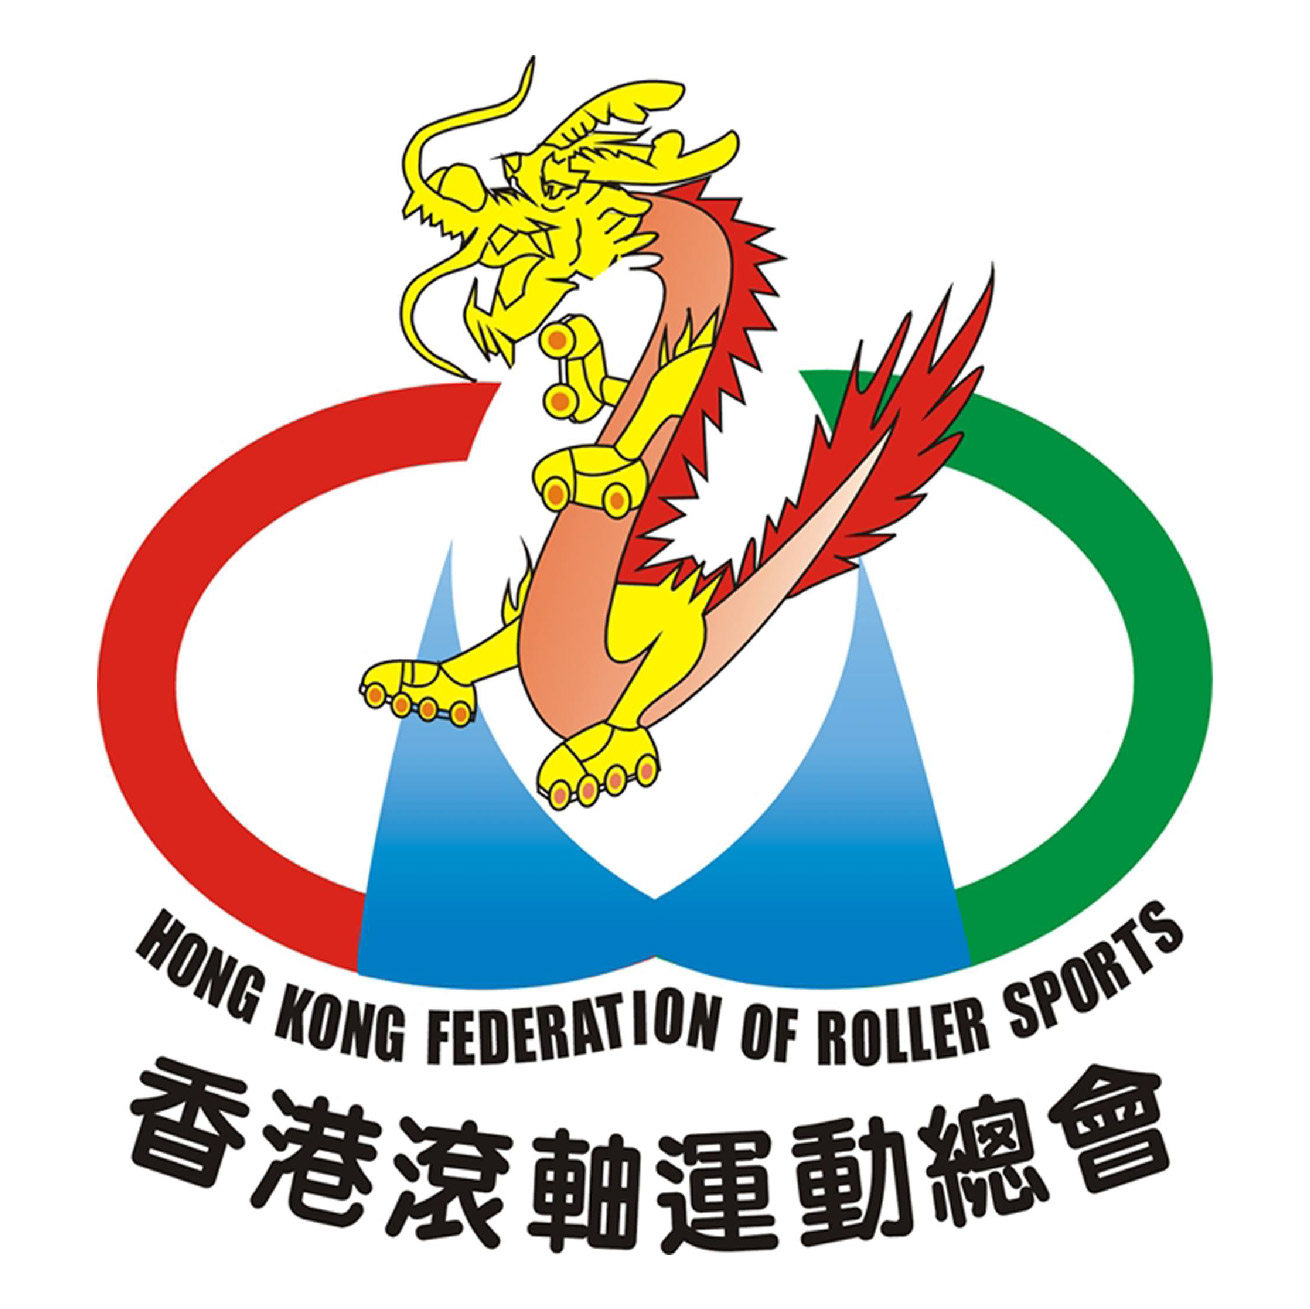 HONG KONG CHINA FEDERATION OF ROLLER SPORTS AND SKATEBOARDING